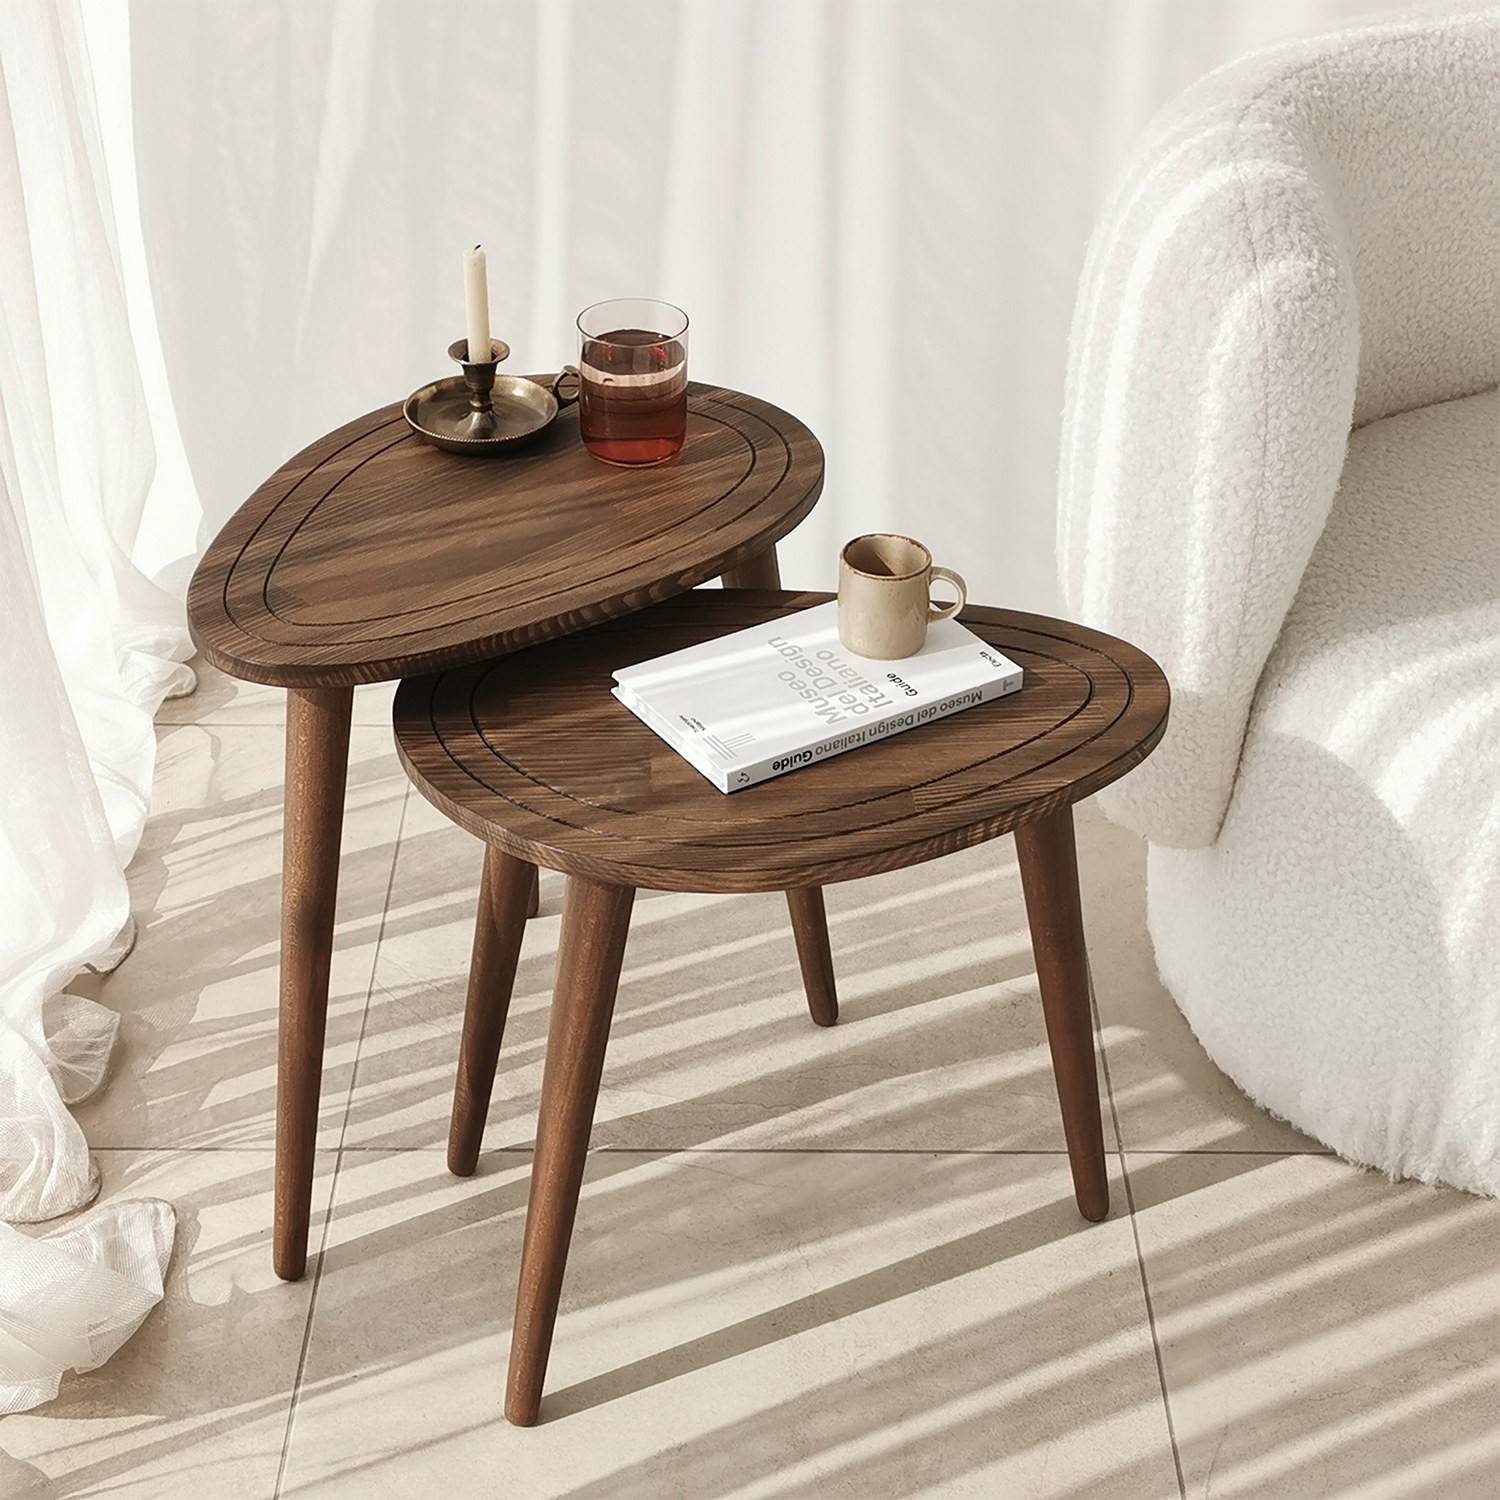 Acquista online tavolino a forma di tronco di legno